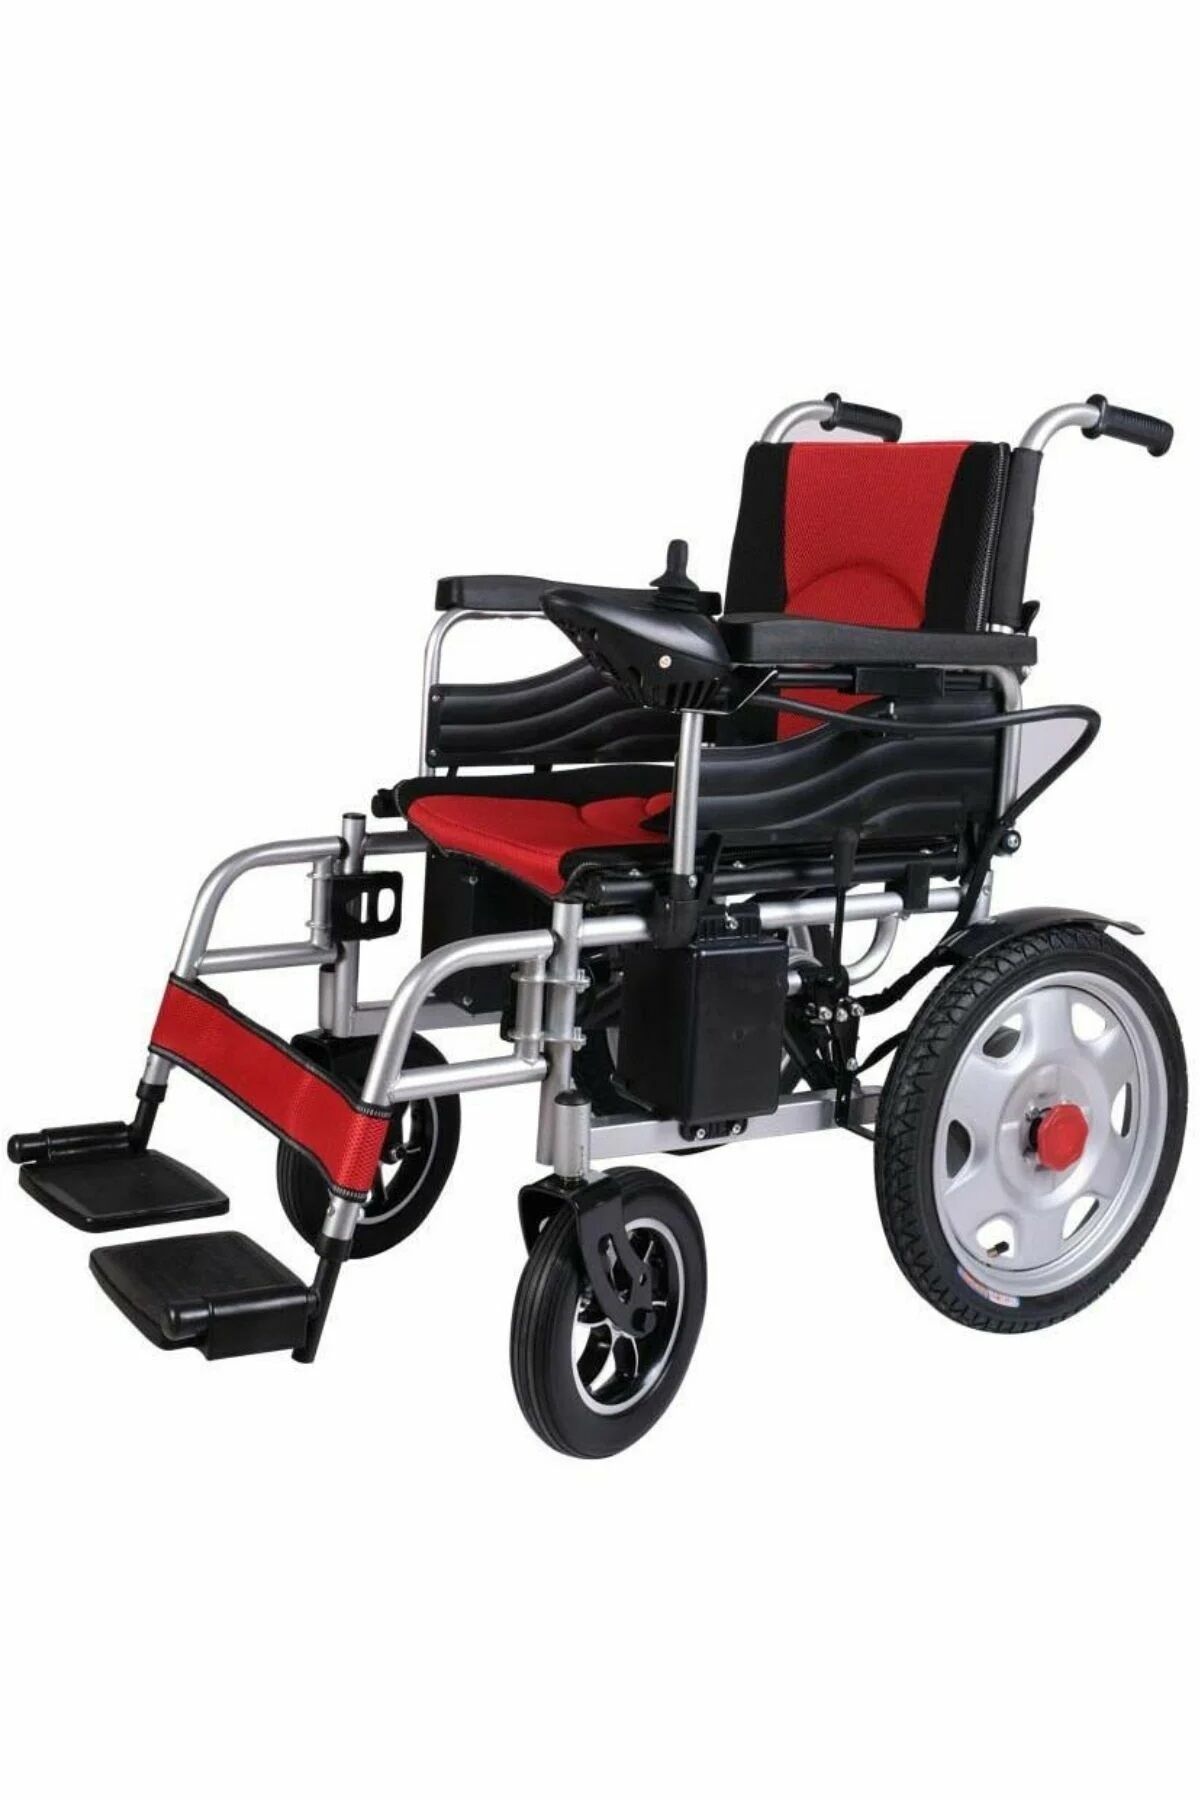 Asansöre Sığan Akülü Sandalye | Katlanabilir Akülü Tekerlekli Sandalye